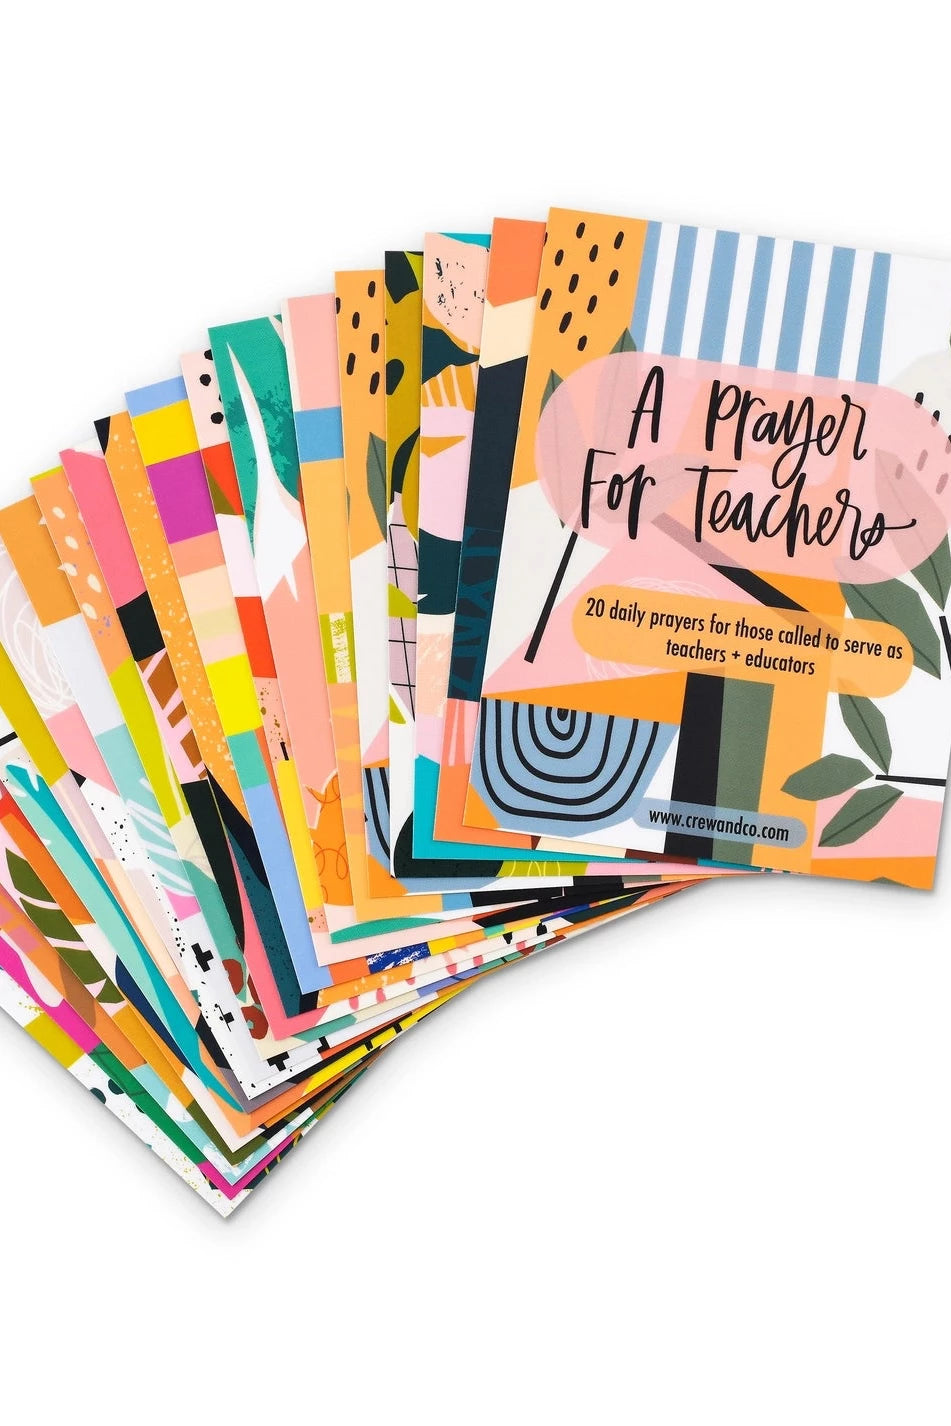 A Prayer for Teachers Cards